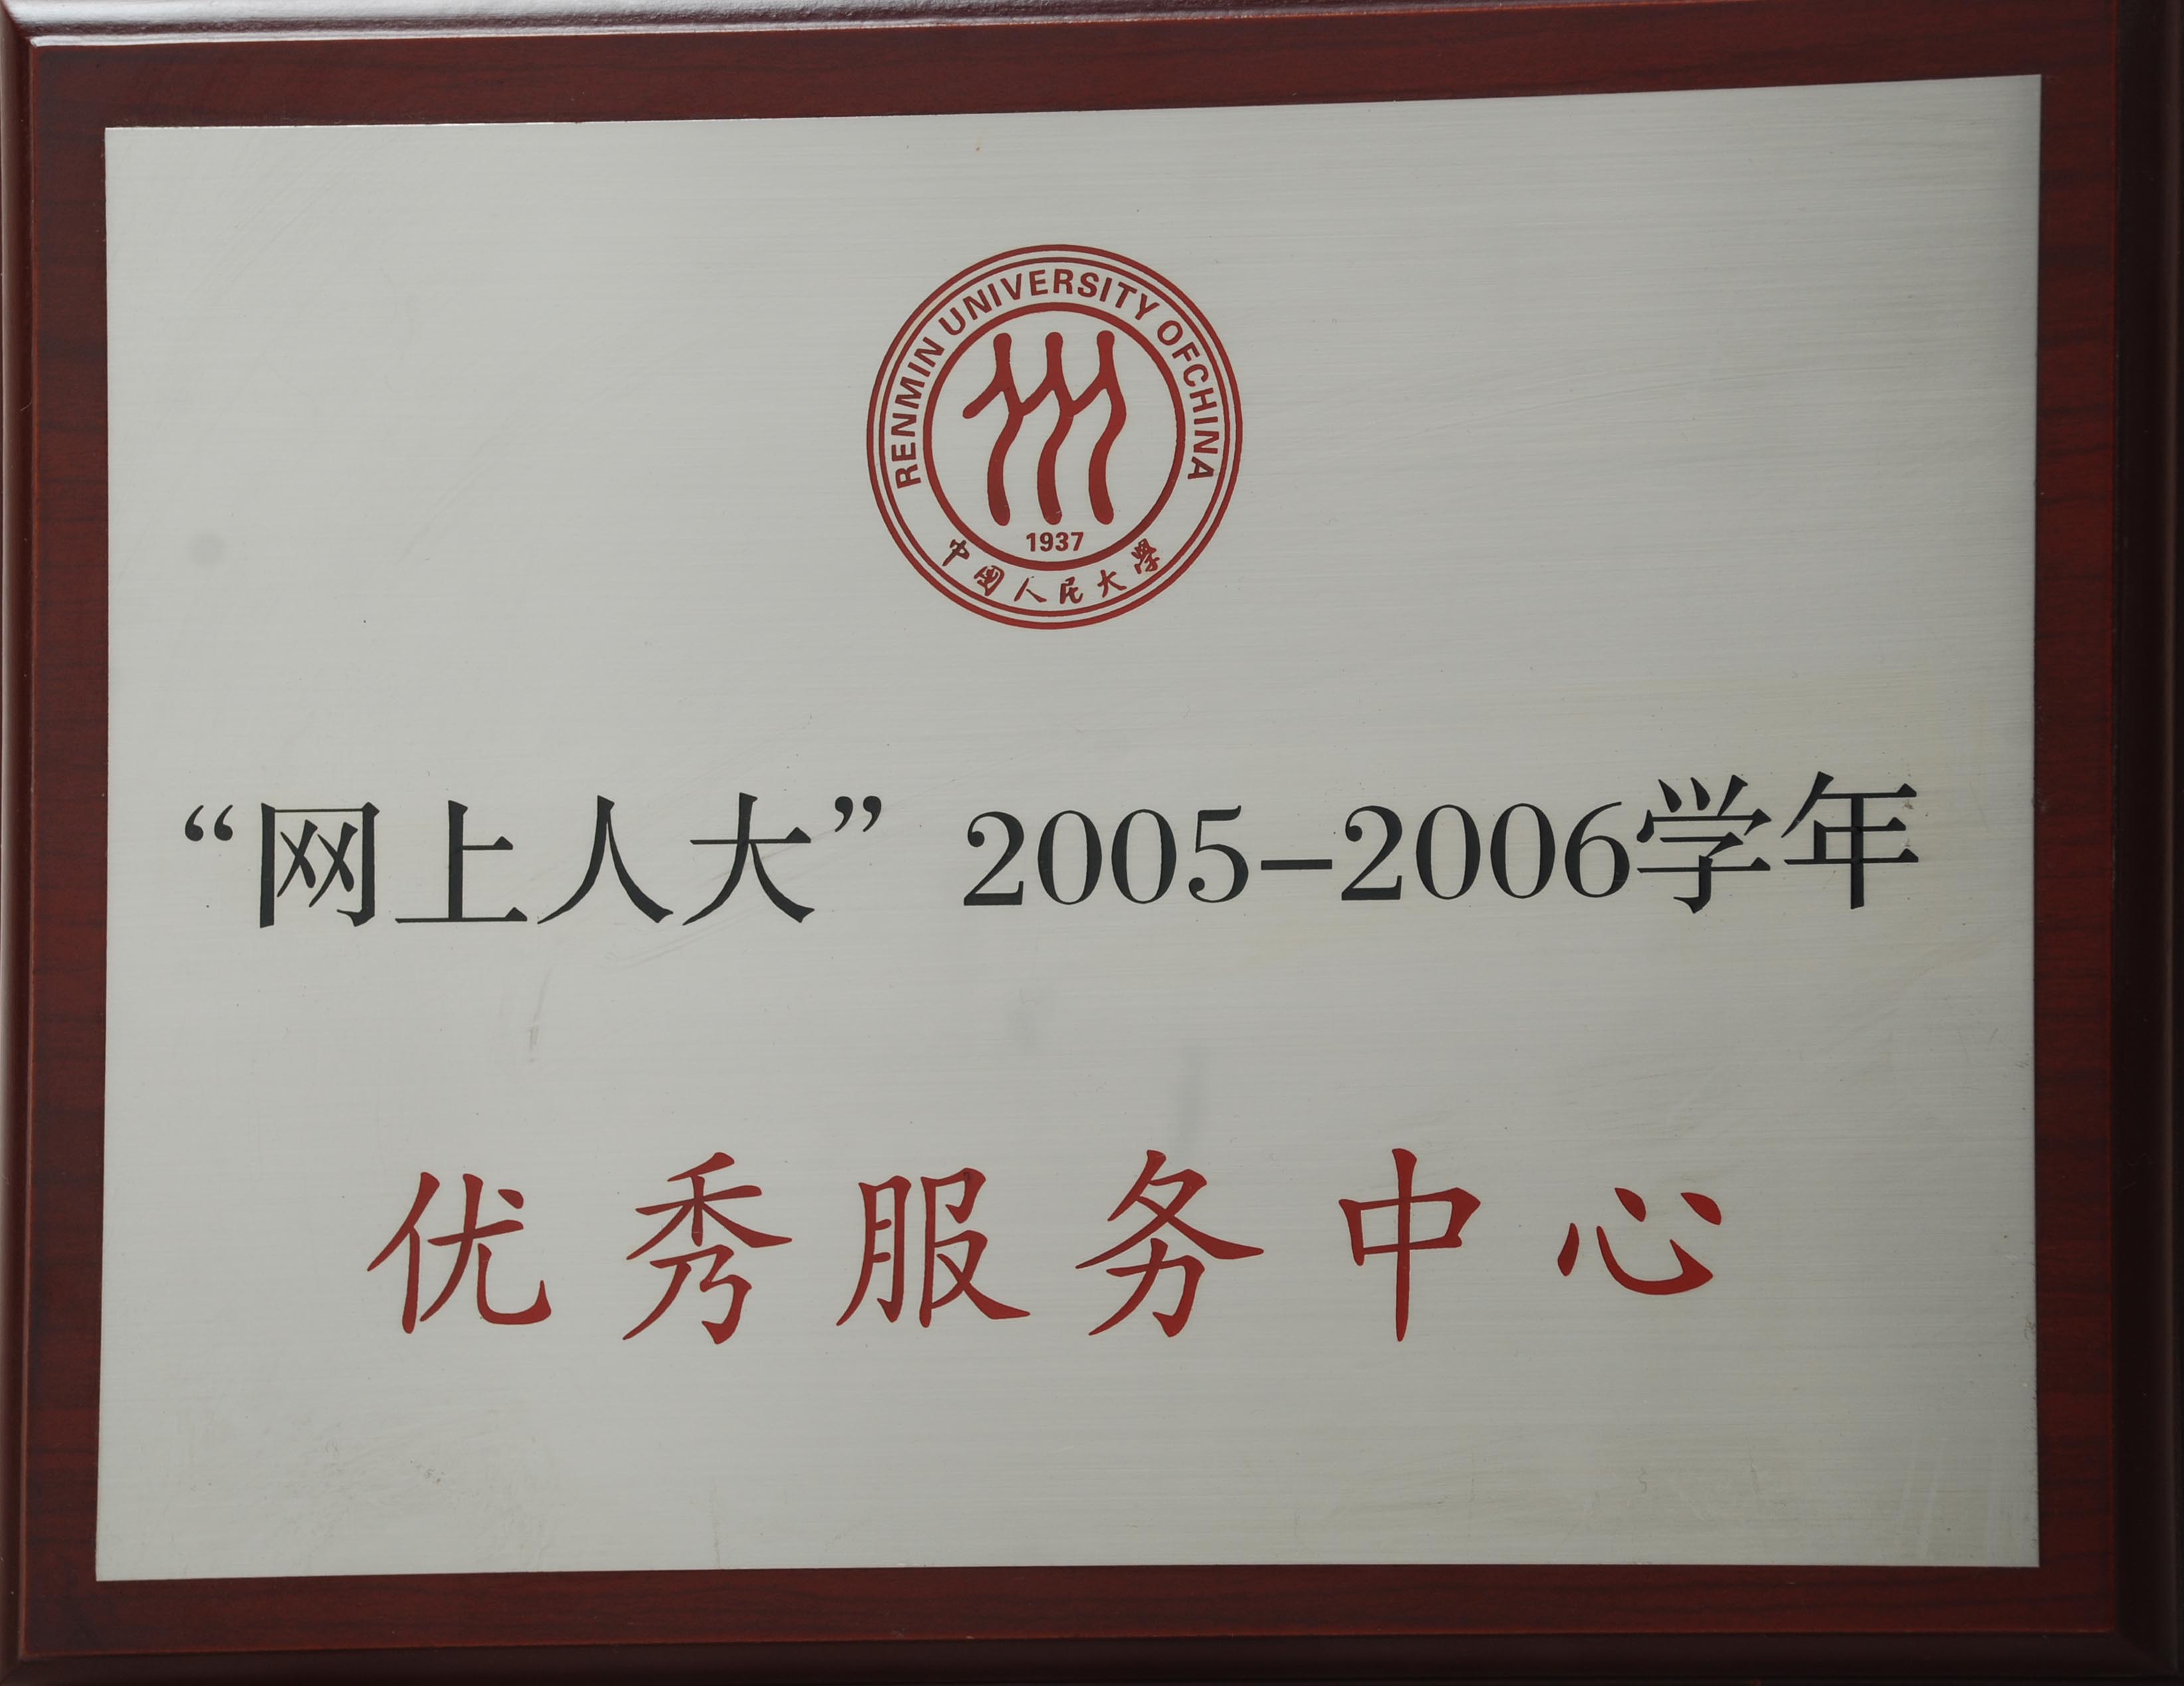 获得2006年华东师范大学优秀学习中心